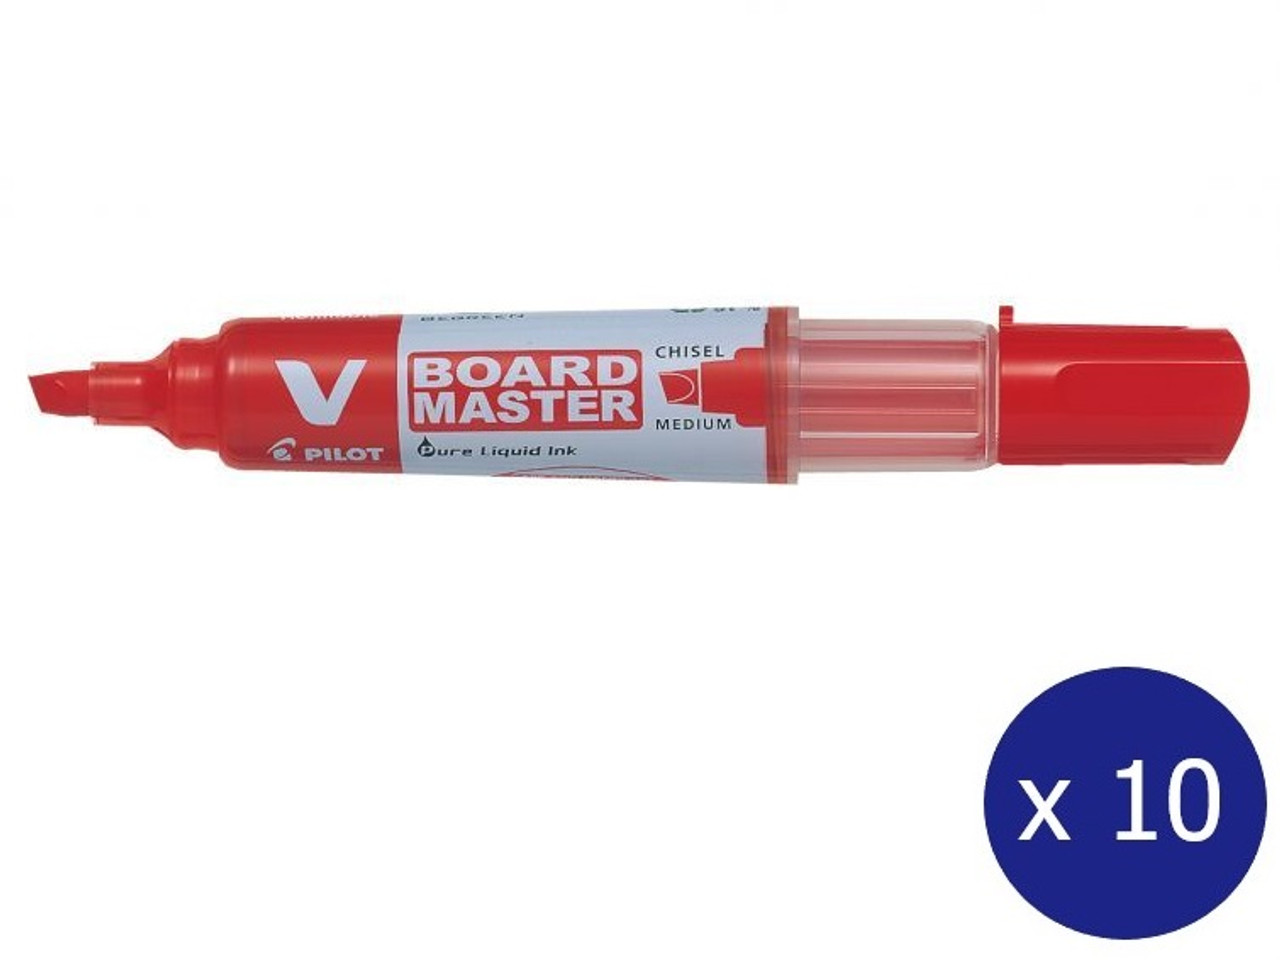 DIY Plexiglass Whiteboard - dry erase or wet erase markers? : r/Workspaces